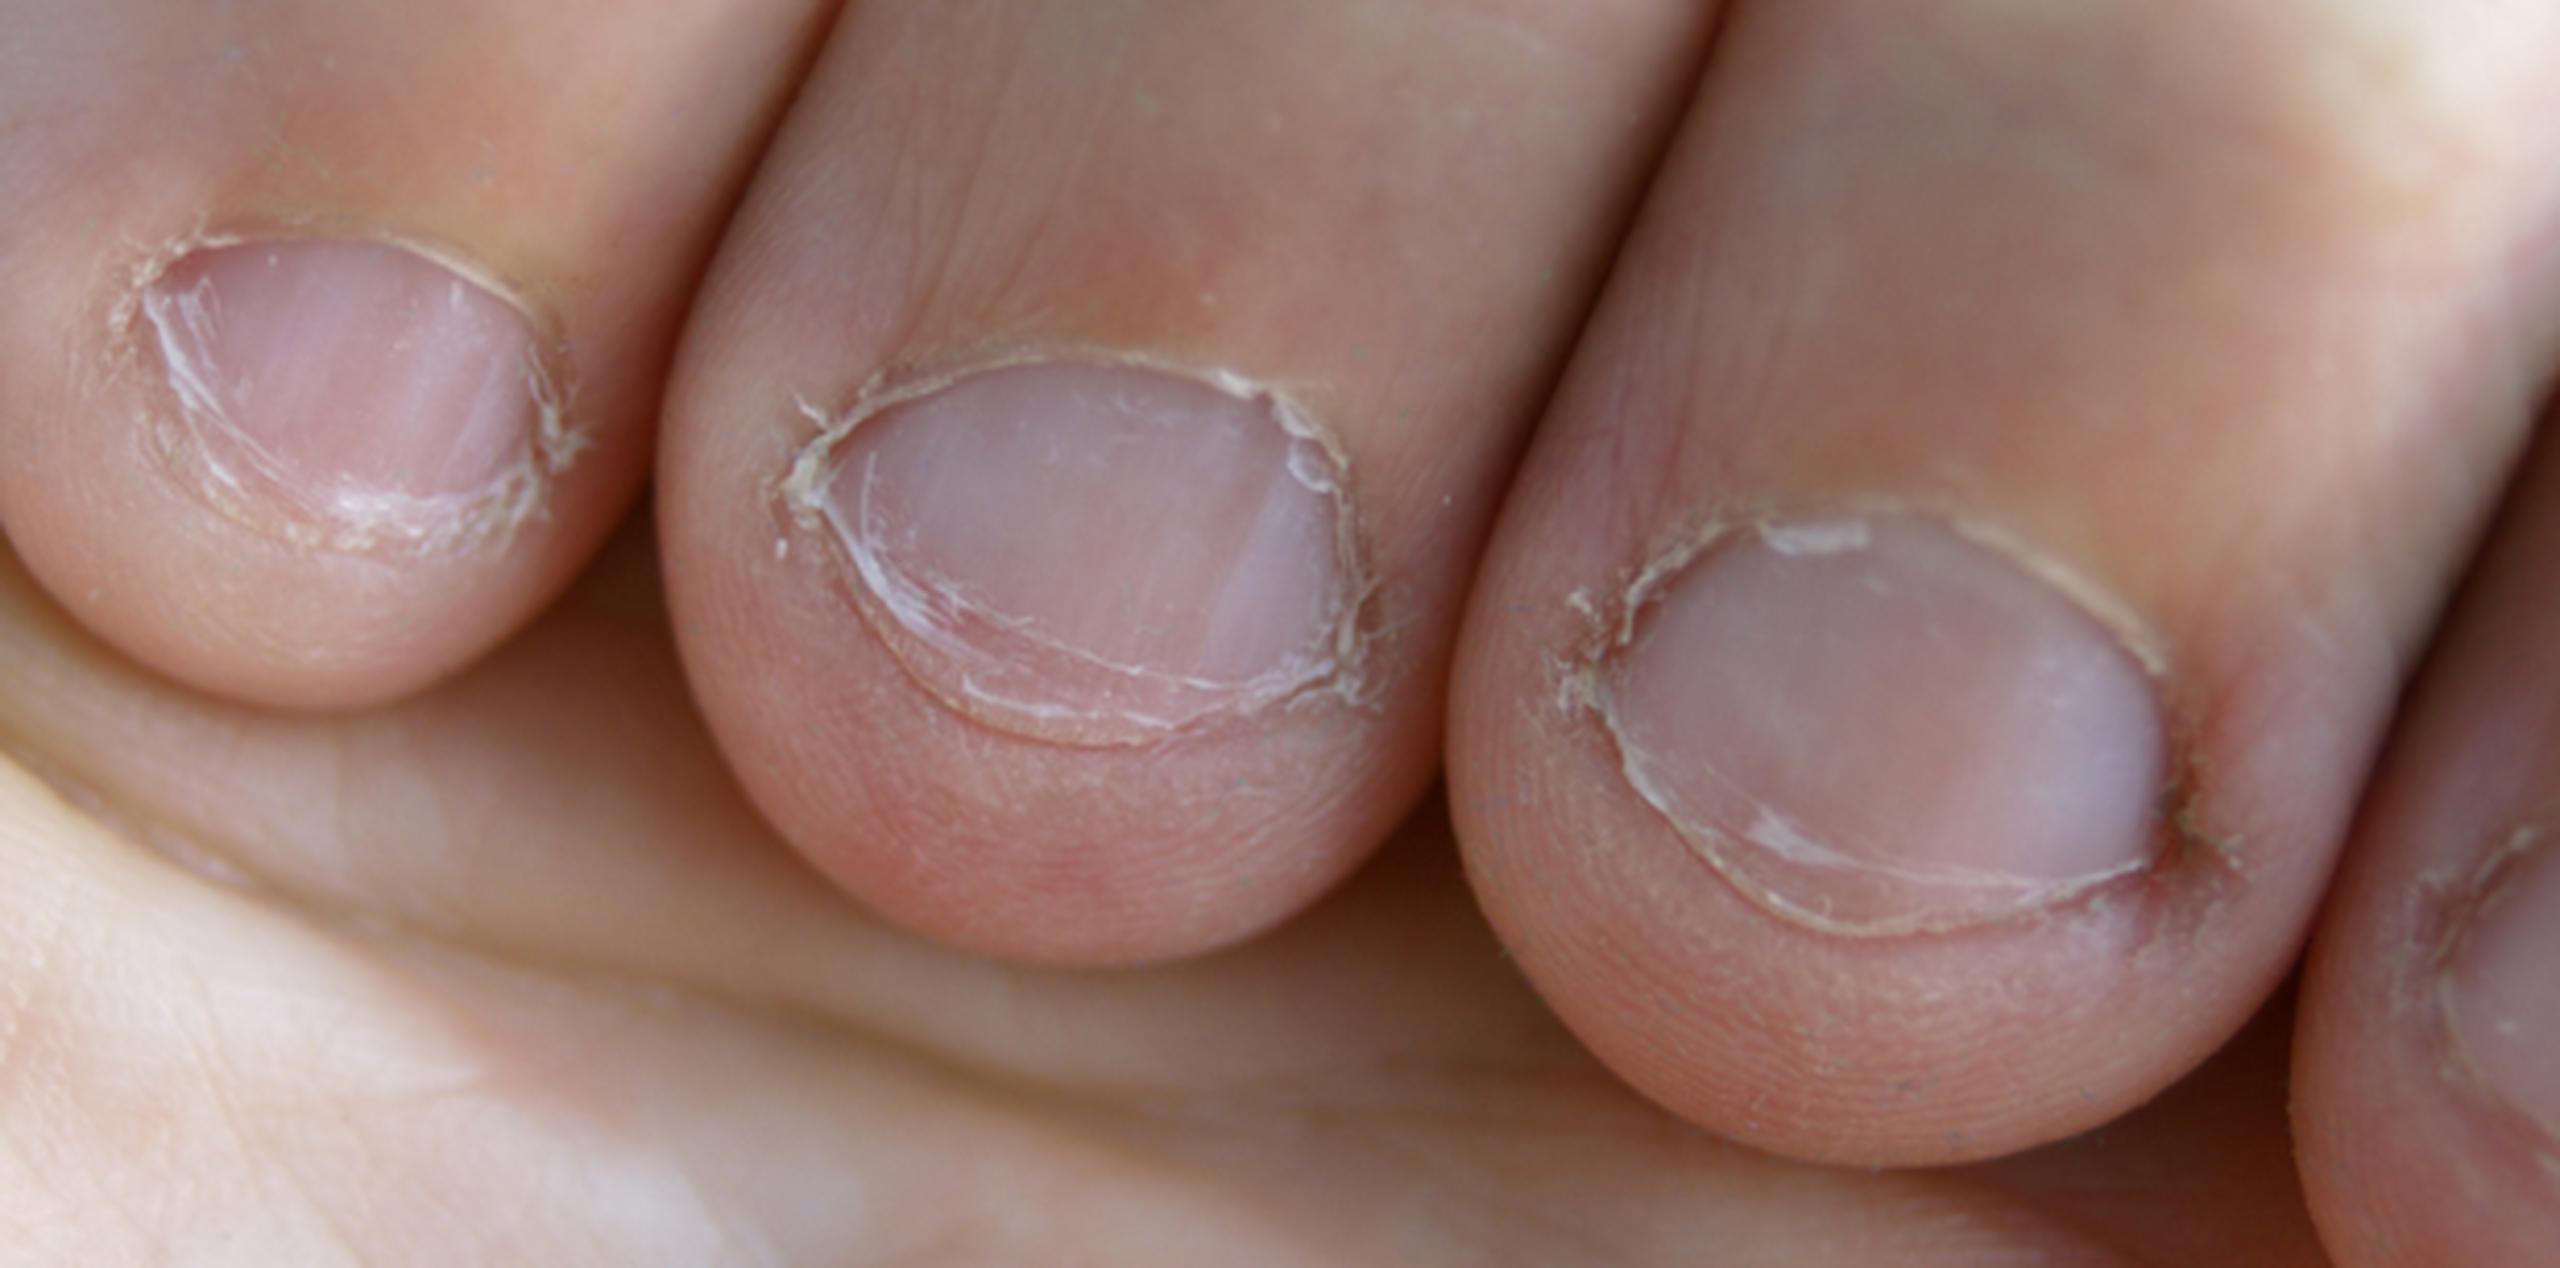 Comerse la piel de alrededor de las uñas tiene riesgos mortales. (Shutterstock)